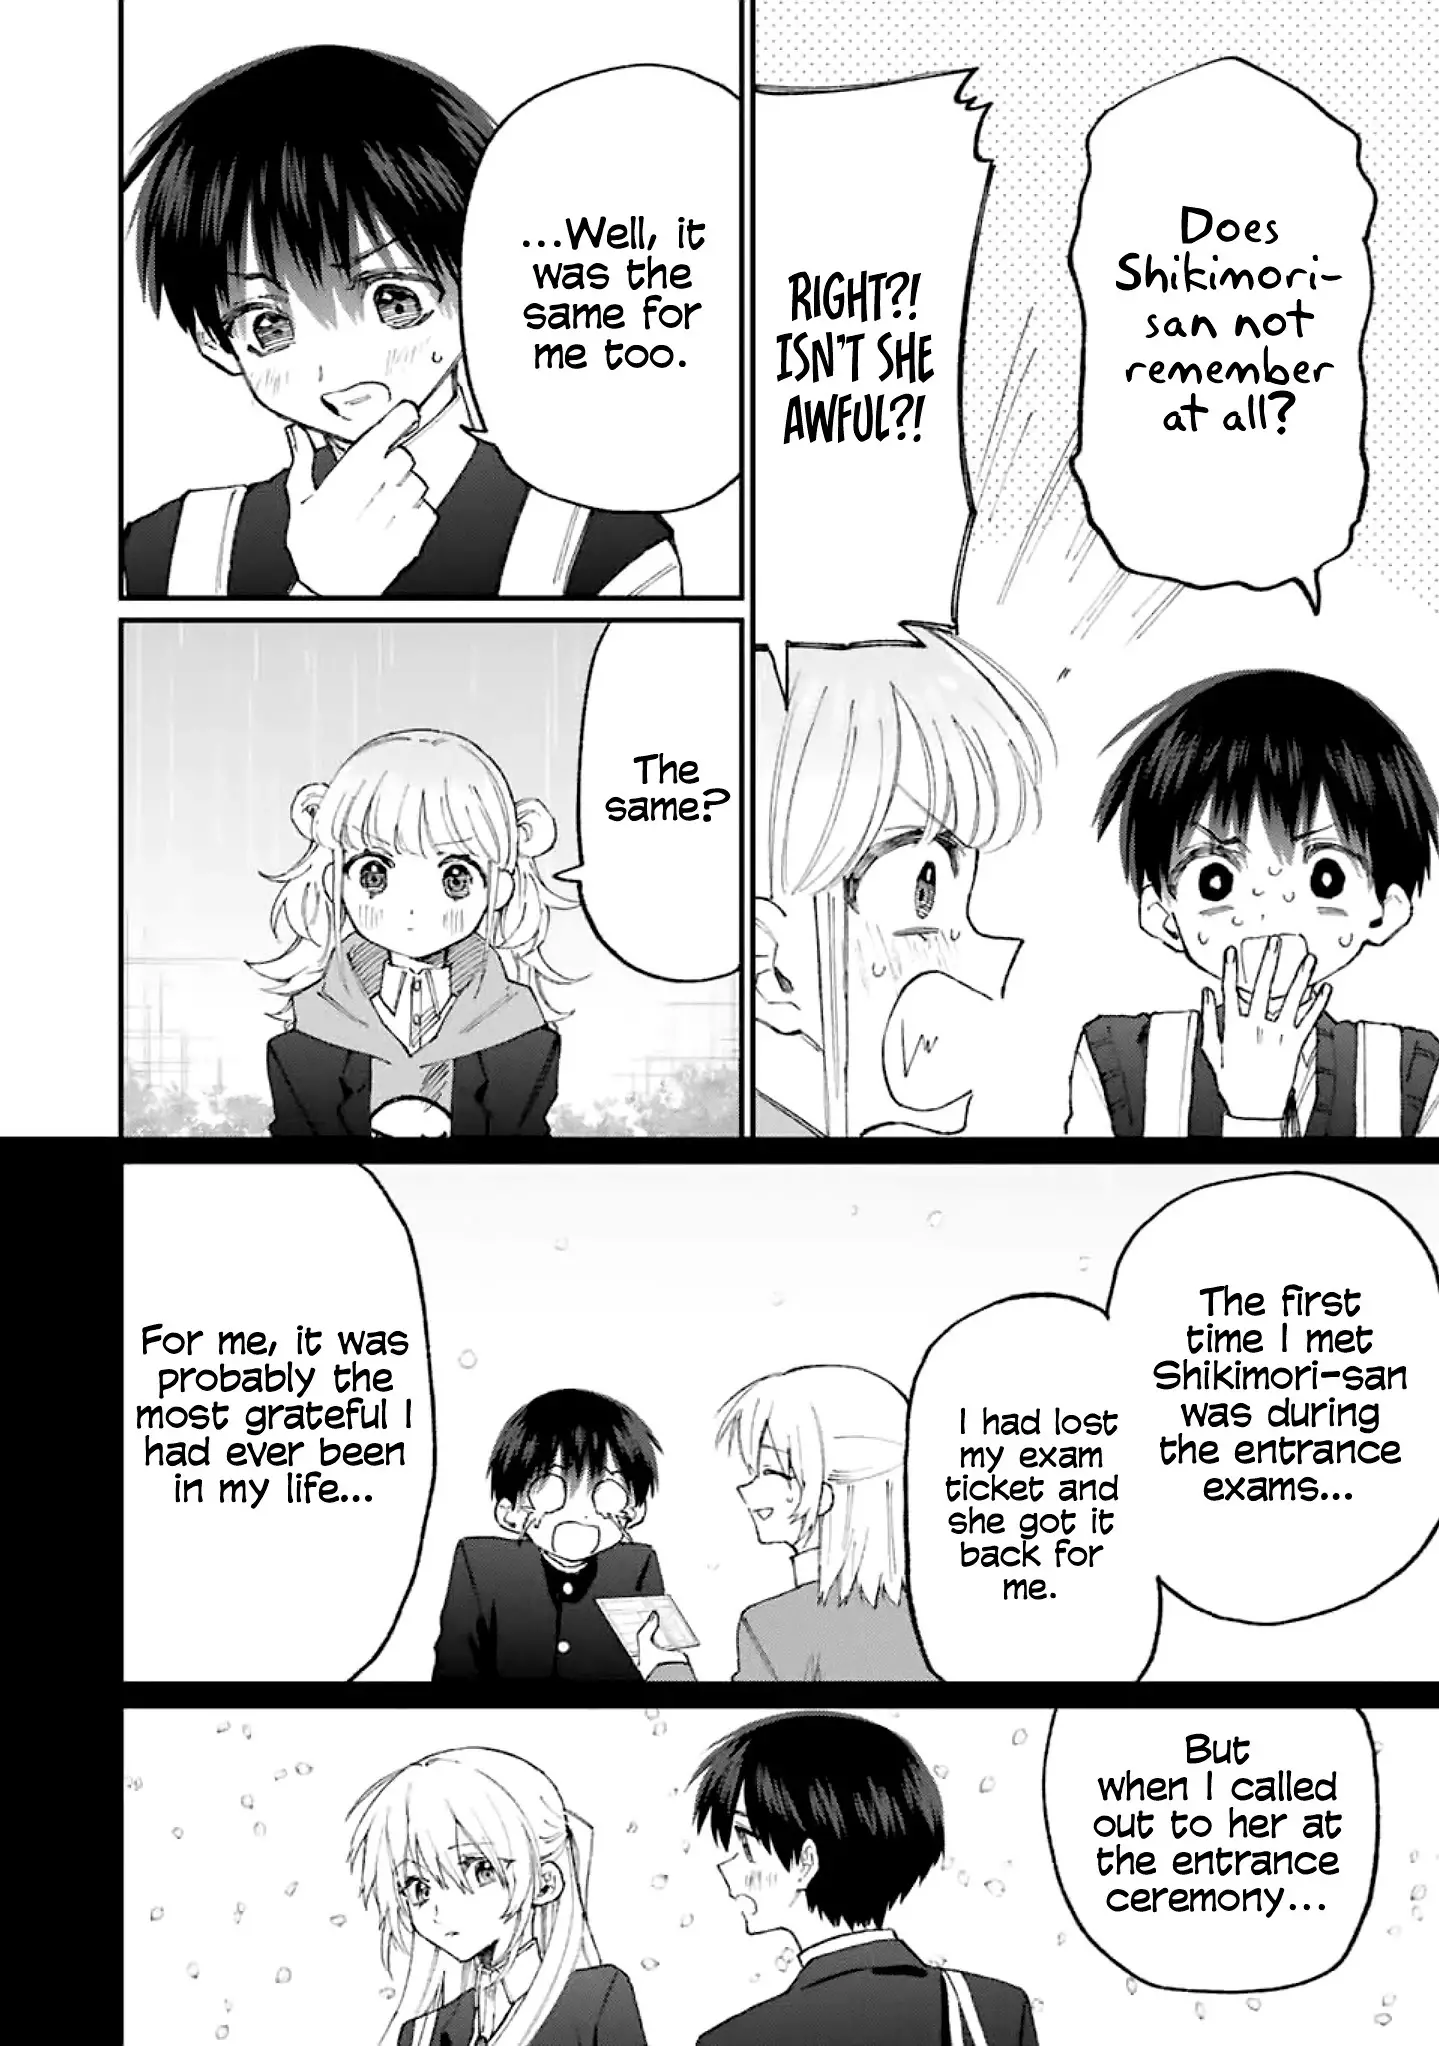 Shikimori's Not Just A Cutie - 131 page 3